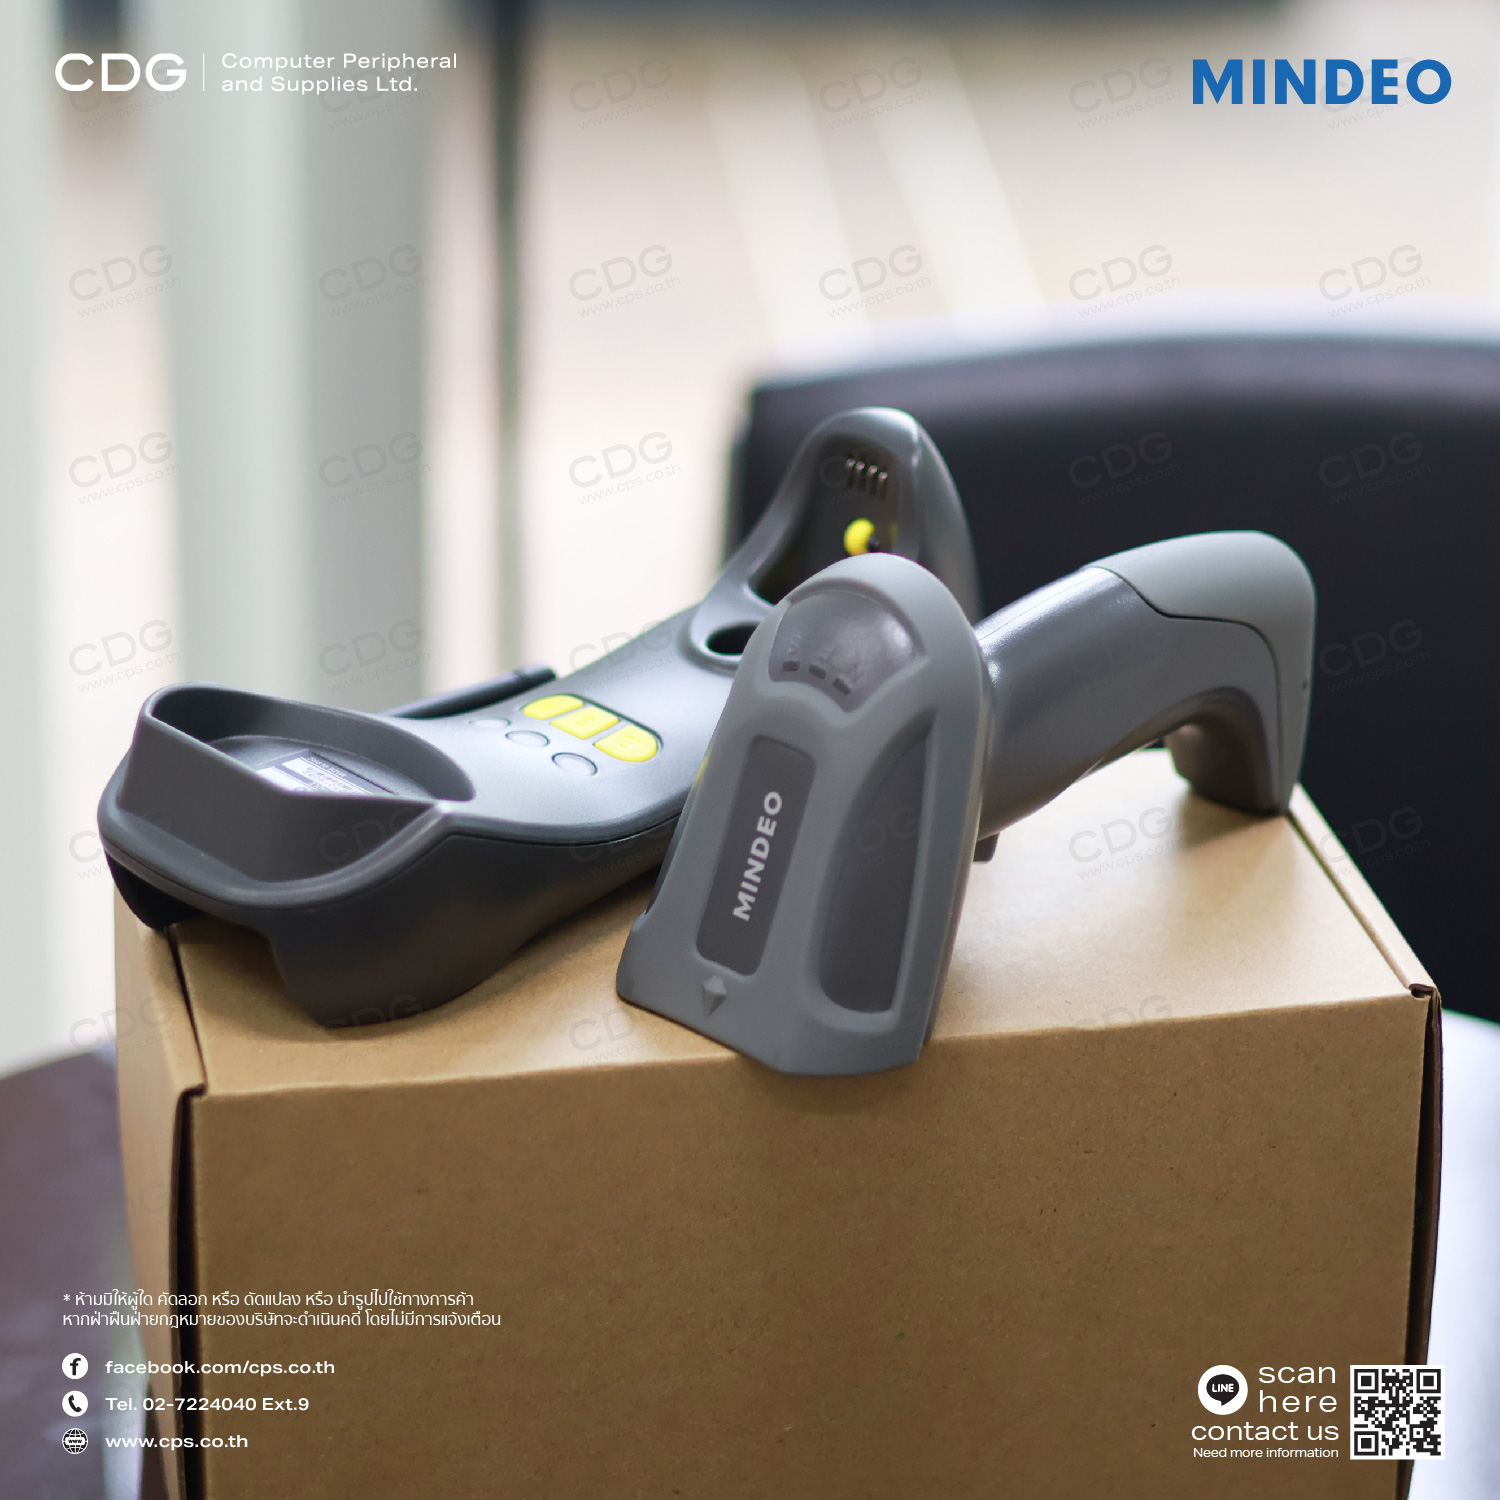 Barcode Scanner Mindeo CS-3290 1D